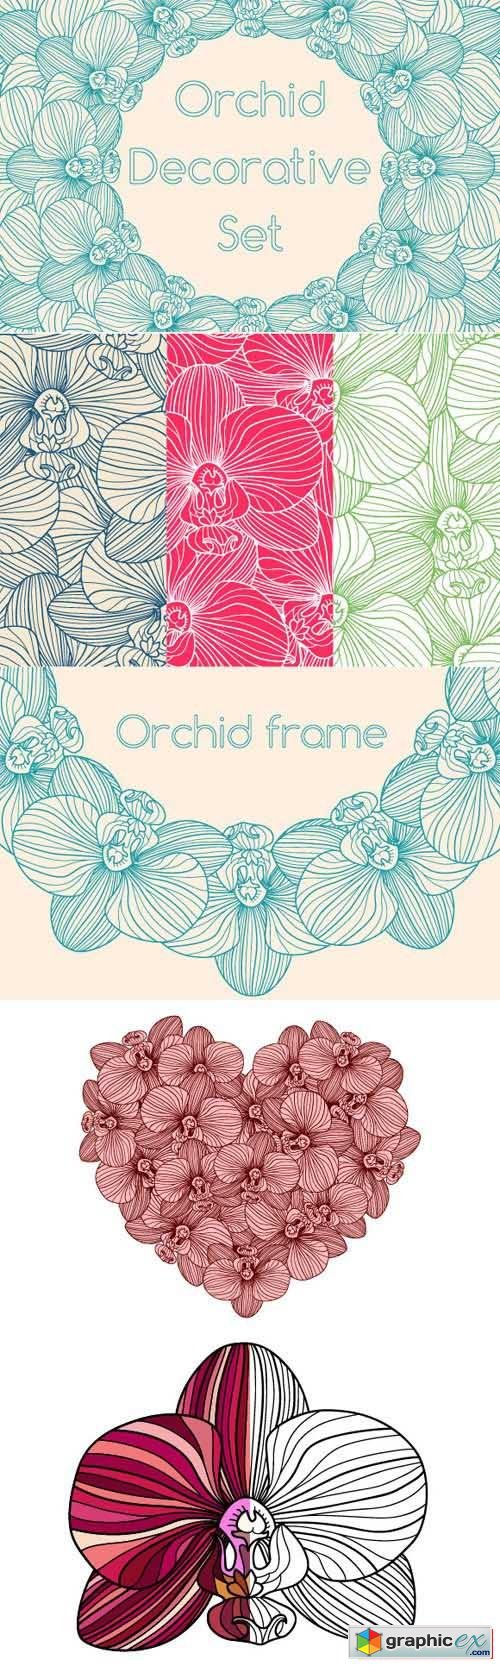 Decorative Orchid Set